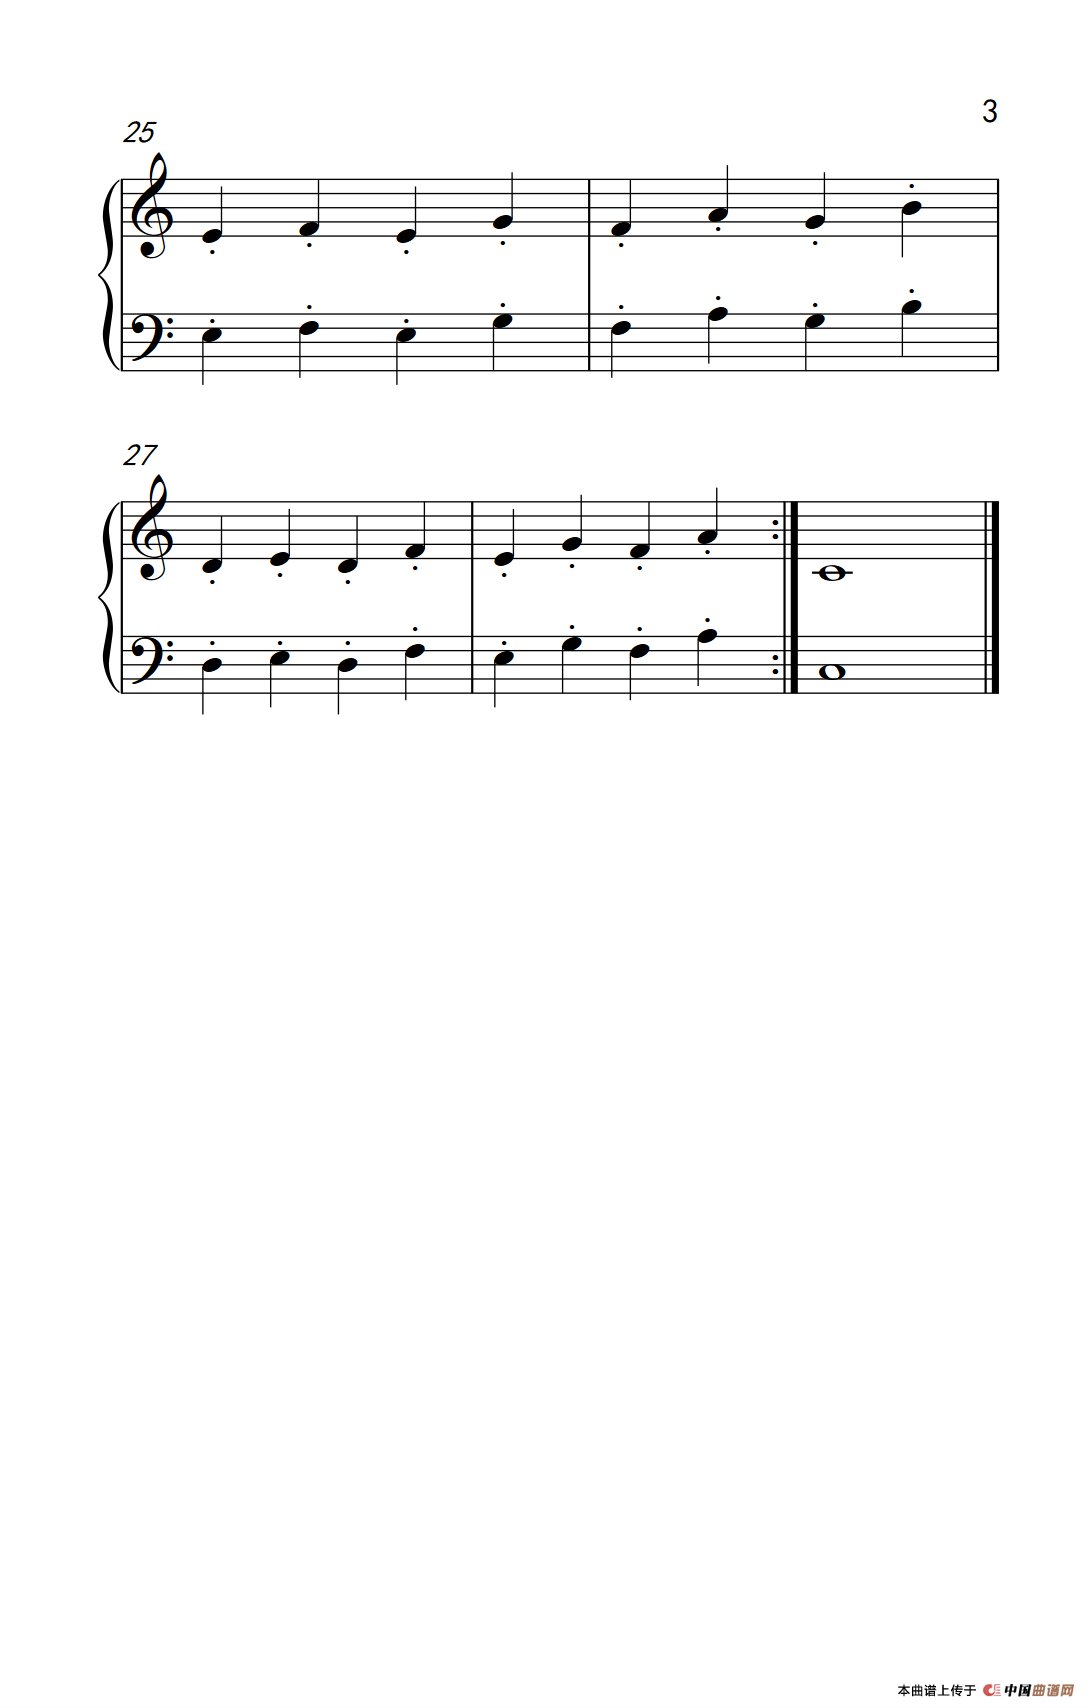 《手腕断奏》钢琴曲谱图分享